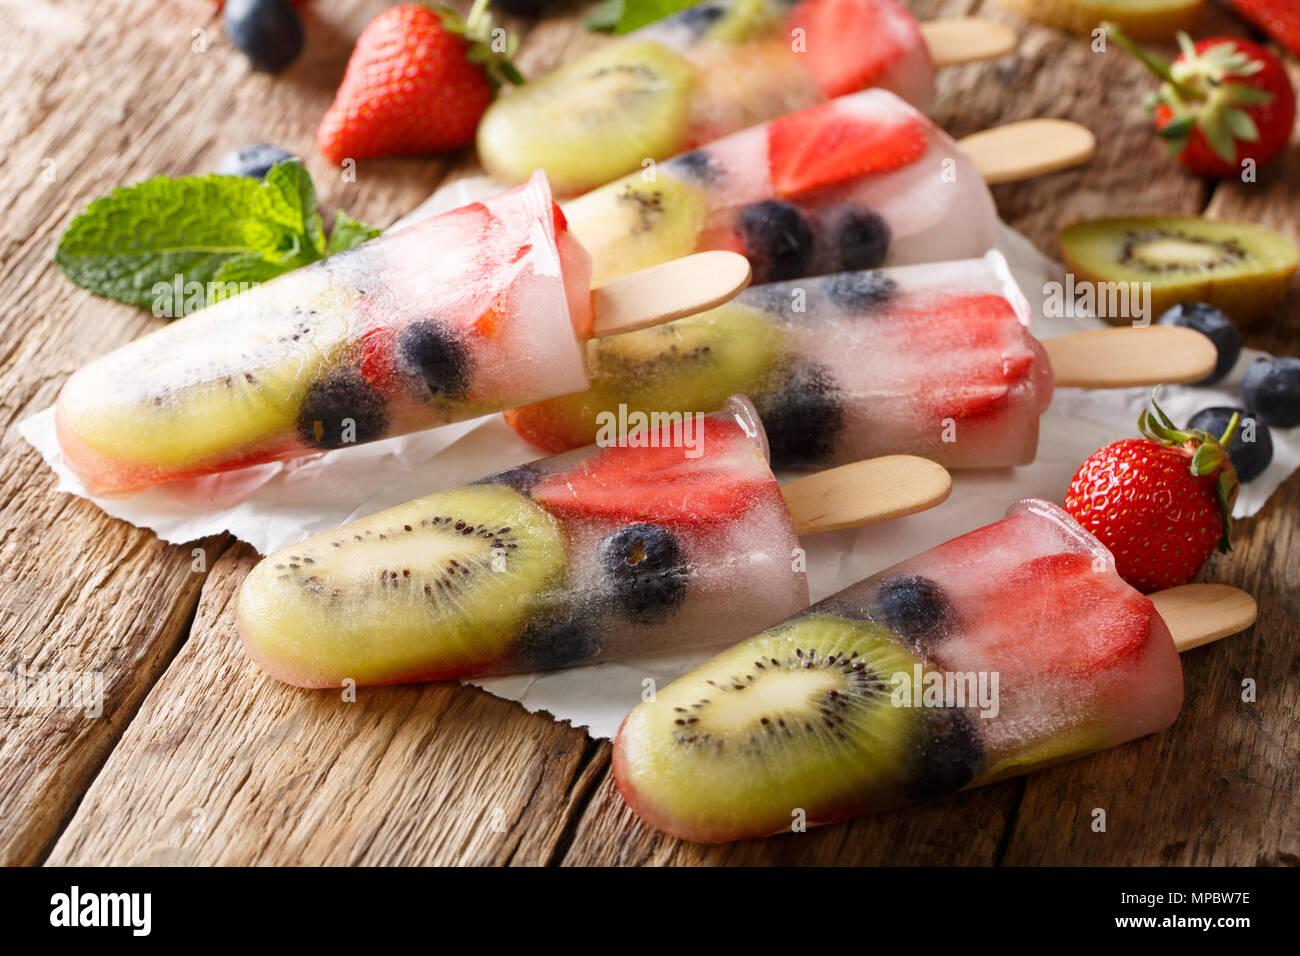 Natürliche berry - Obst Eis mit frischen Erdbeeren, Blaubeeren und Kiwi close-up auf dem Tisch. Horizontale Stockfoto